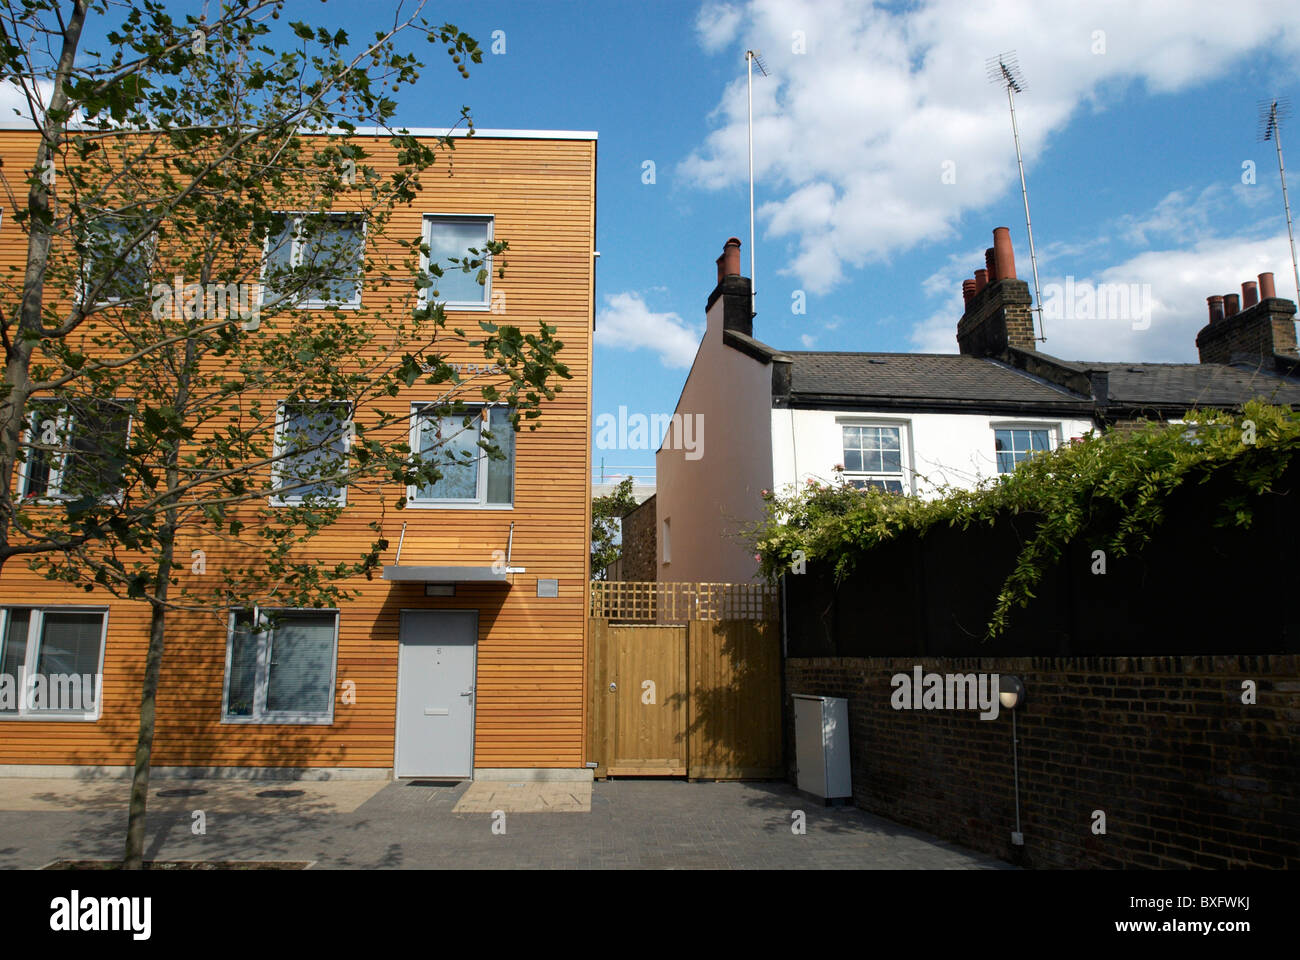 Gemeinsame Eigentum Wohnsiedlung Shepherds Bush London UK Stockfoto